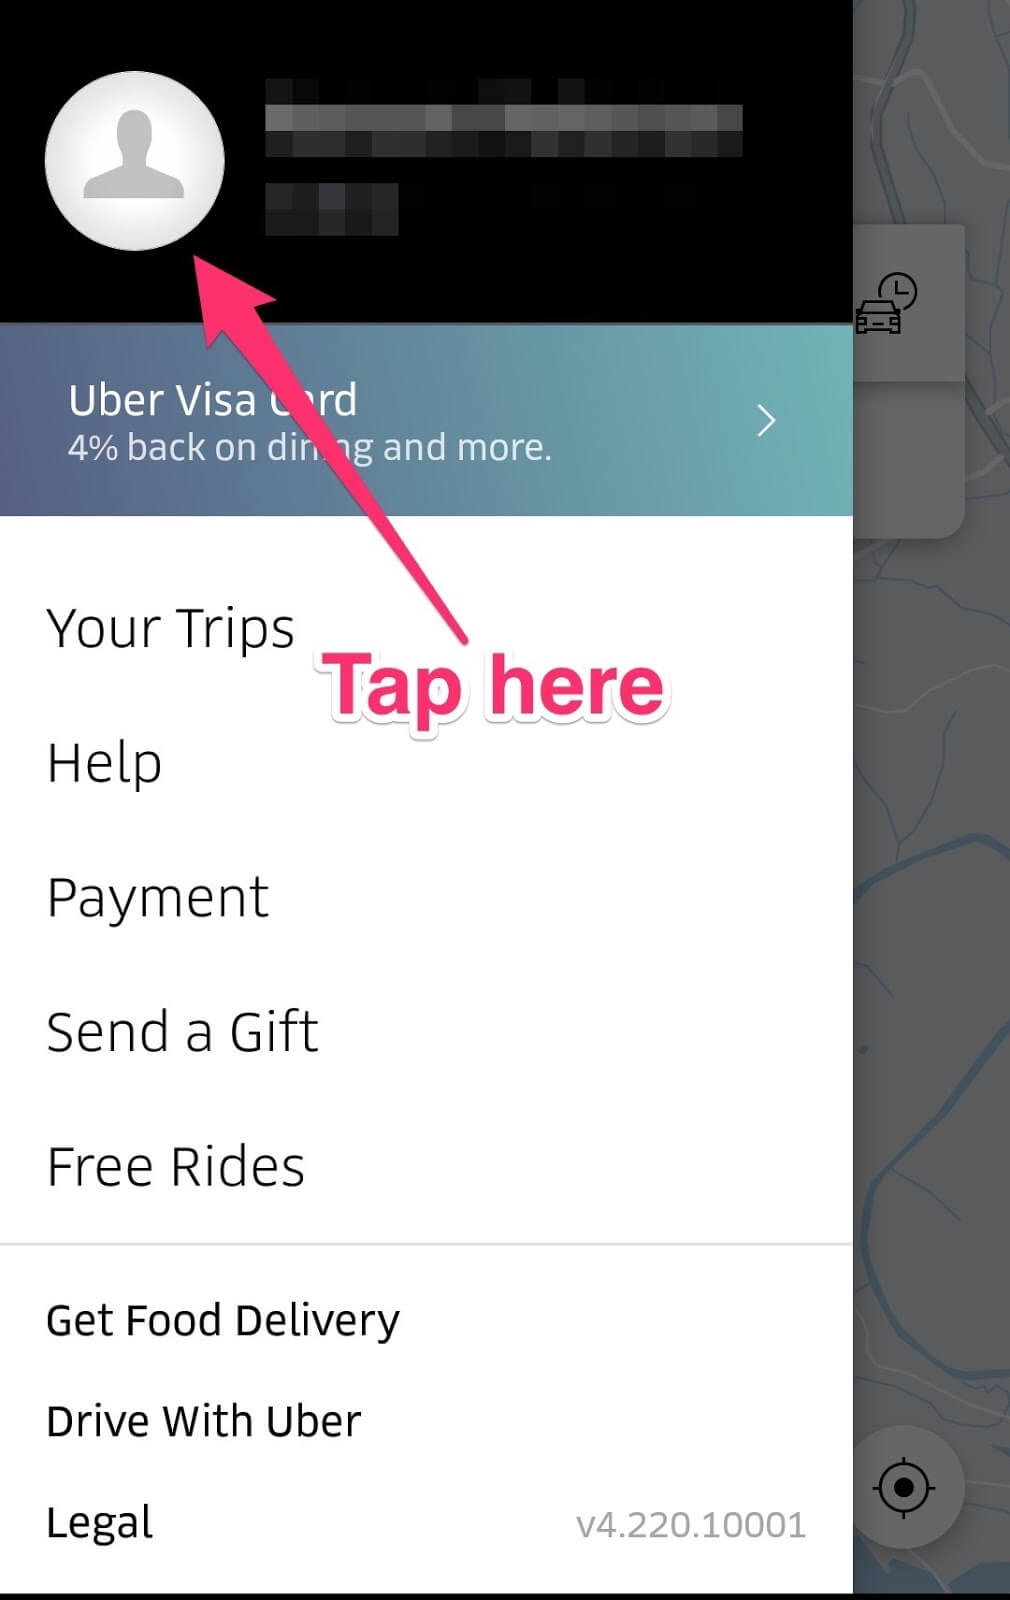 Recibo de Uber: Tu perfil